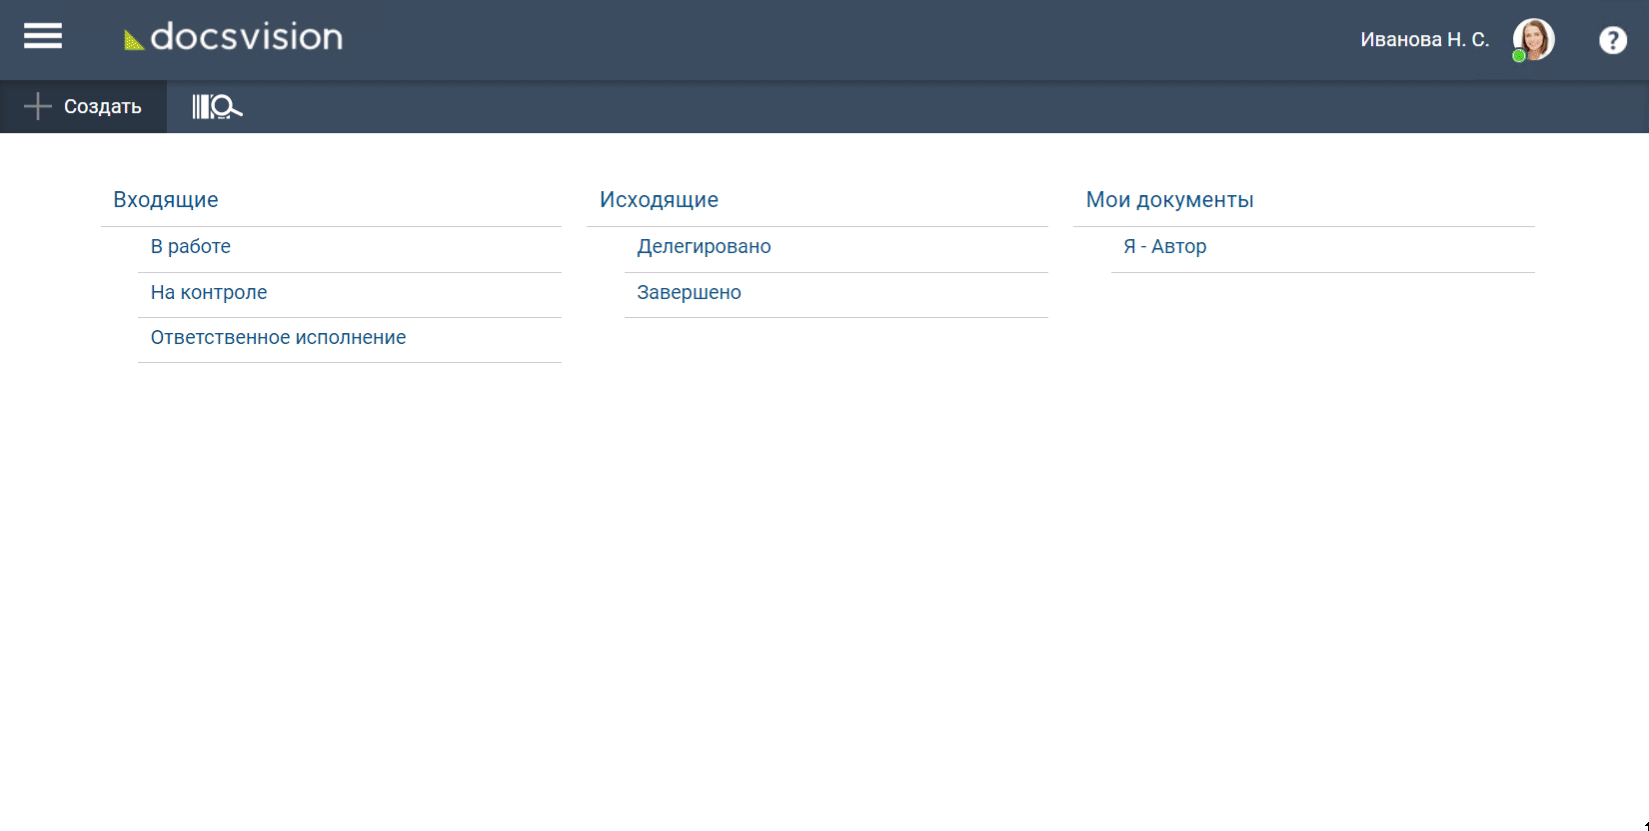 Справочник сотрудников в СЭД. Web-клиент Docsvision